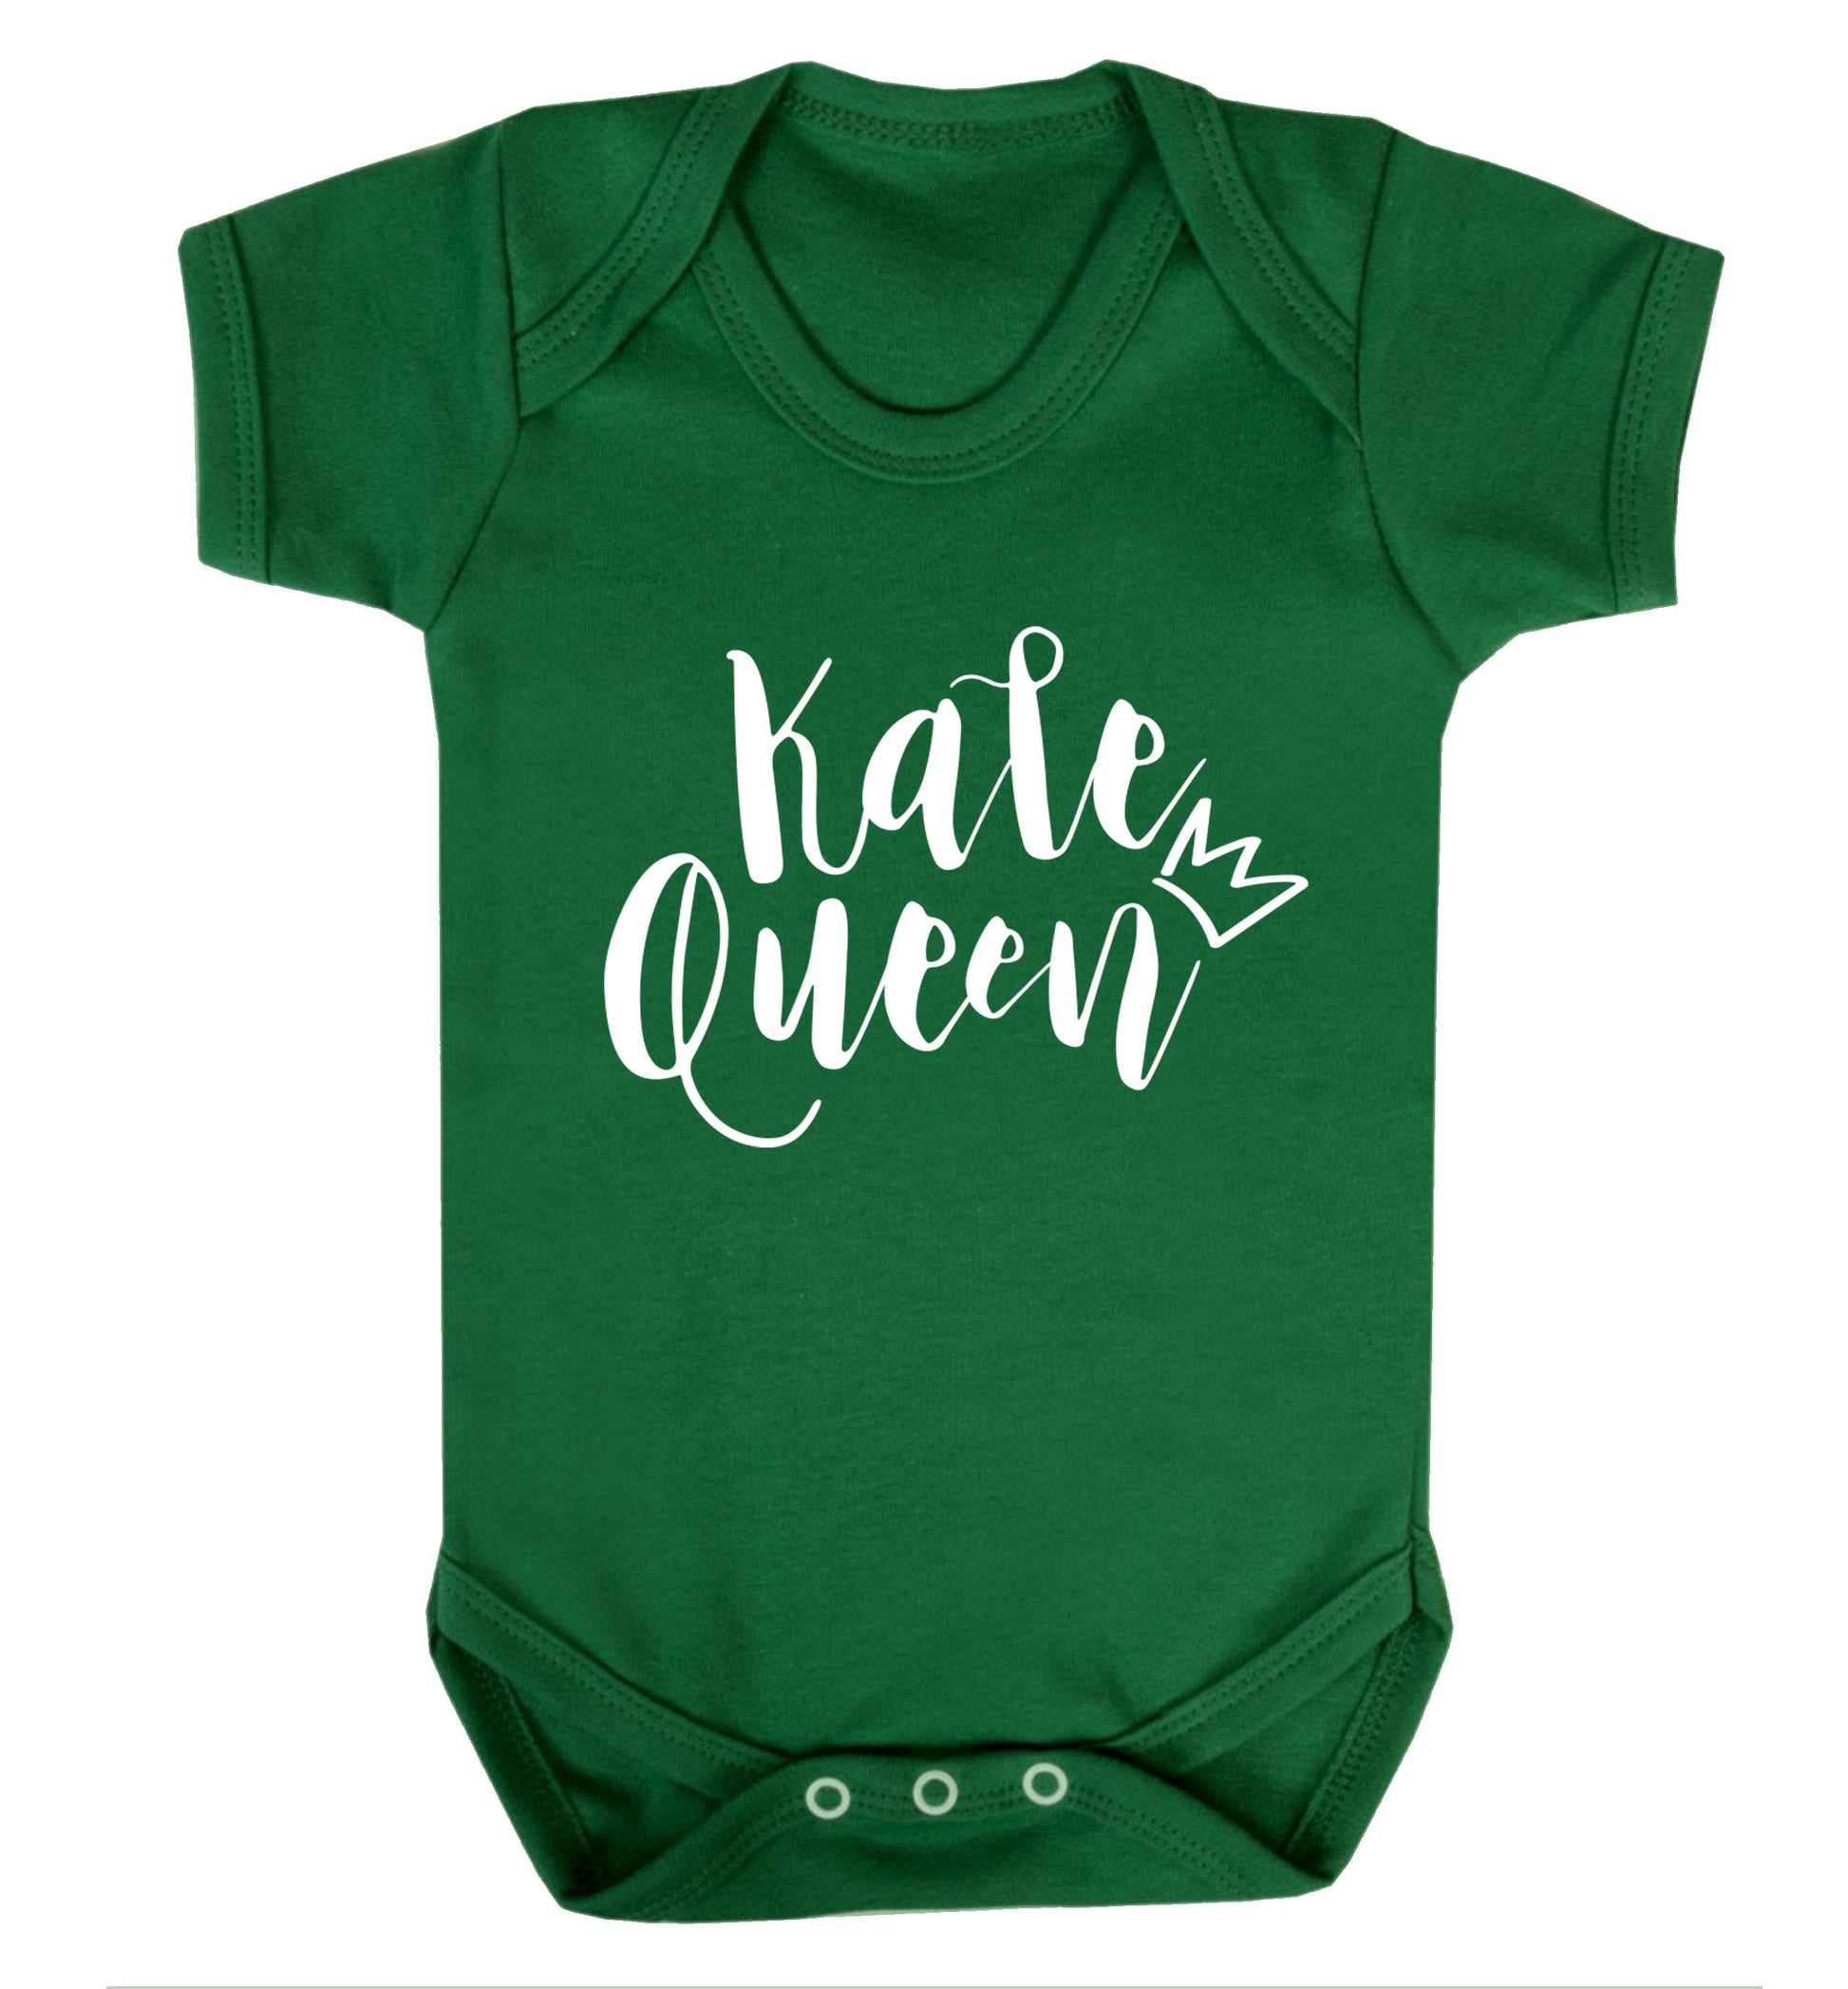 Kale Queen Baby Vest green 18-24 months